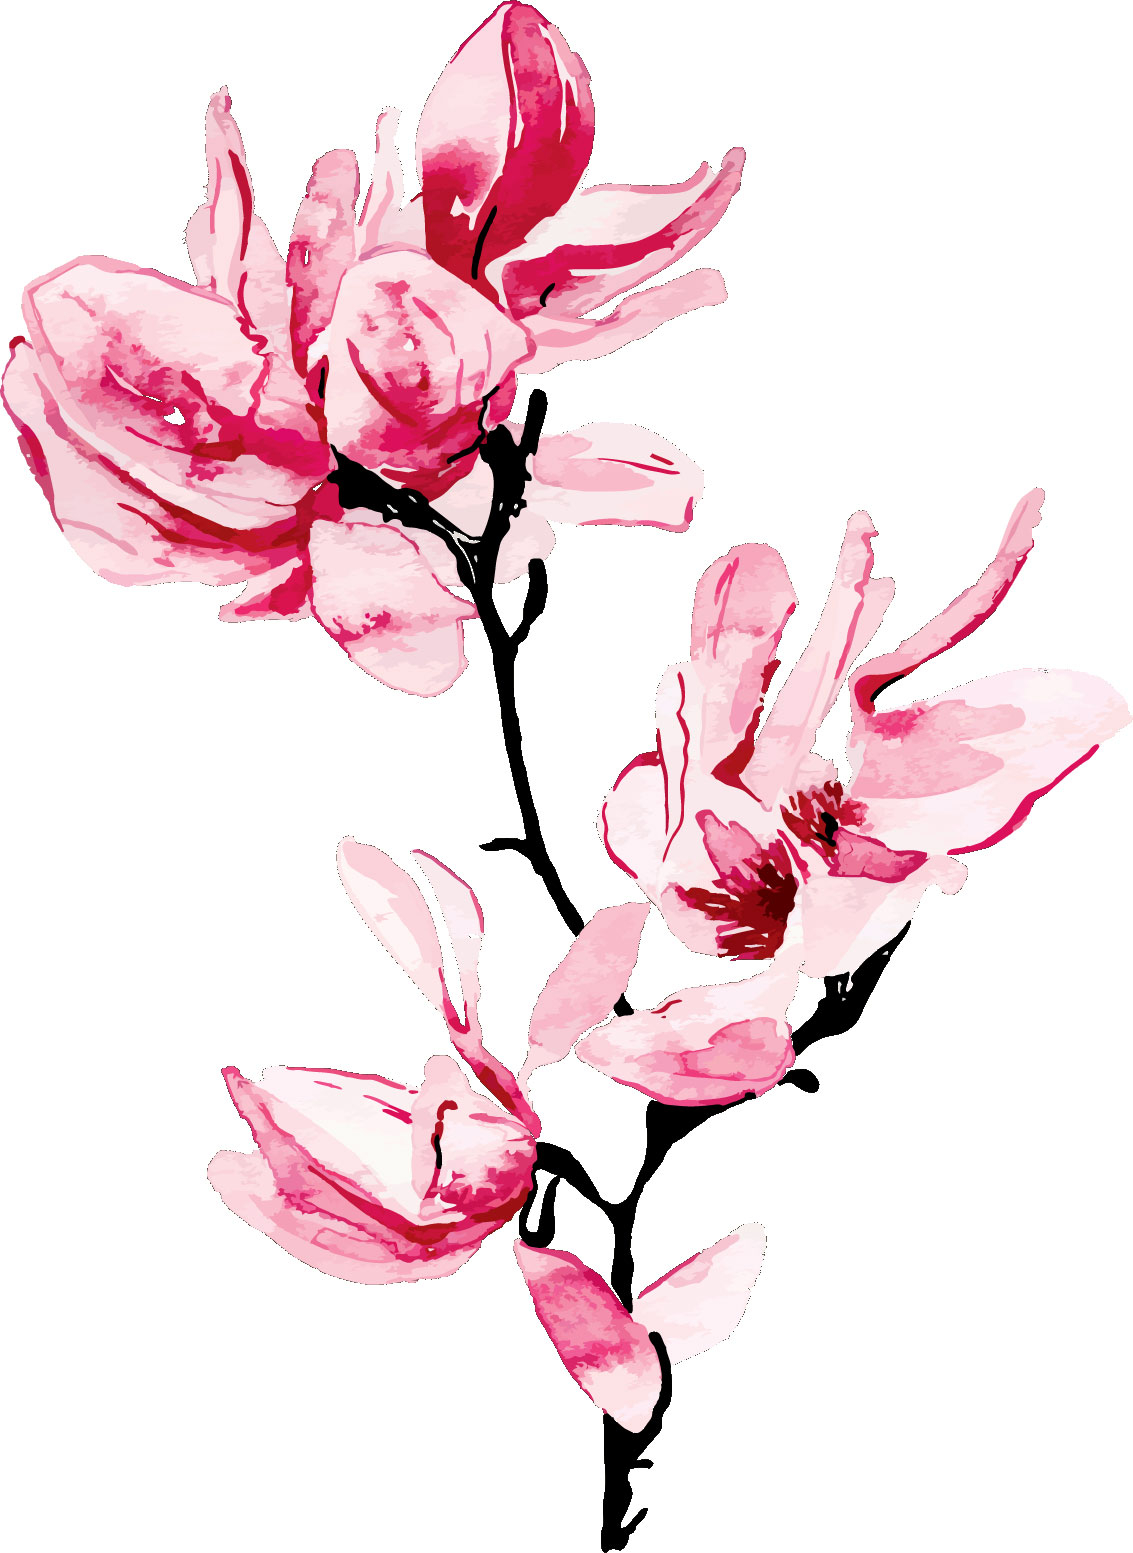 ピンクの花のイラスト フリー素材 No 371 ピンク 枝 水彩画風